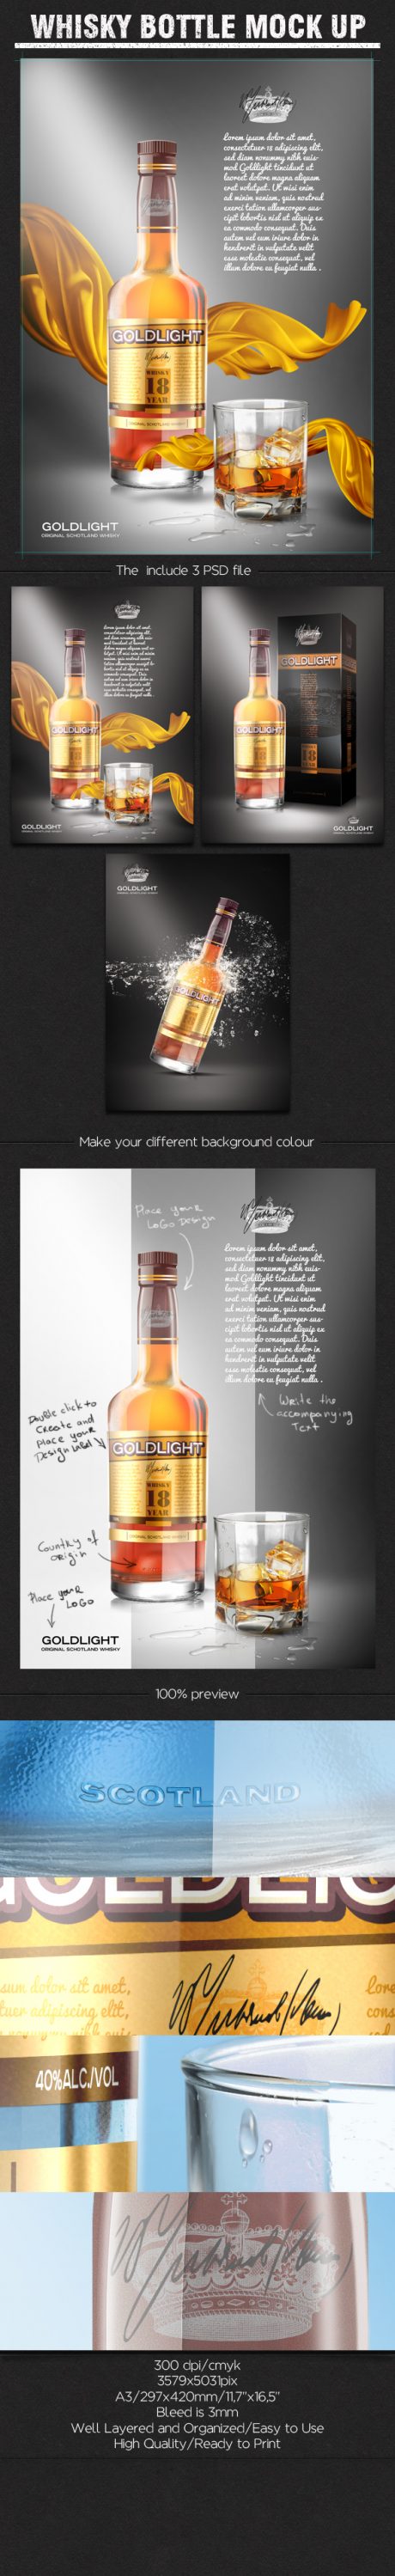 Download Whisky Bottle Mockup Free PSD | Download Mockup